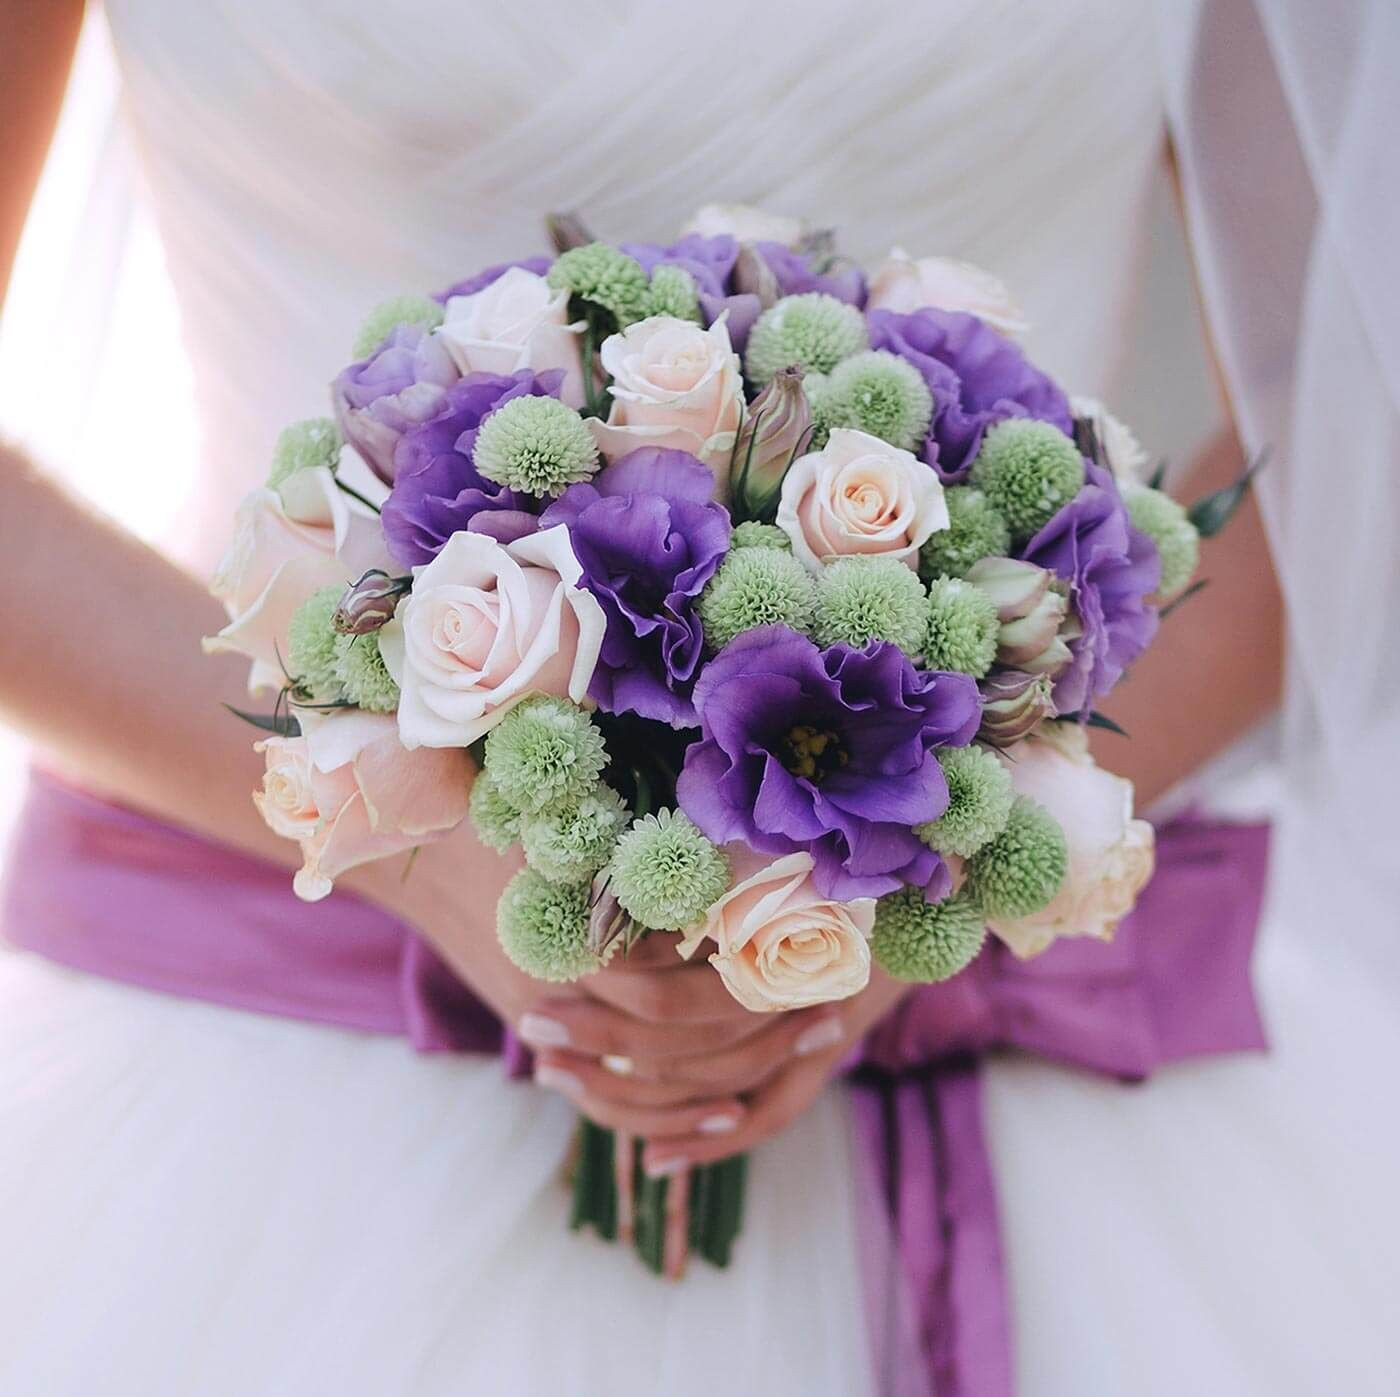 Brautstrauß Beispiele
 Brautstrauß lila creme in 2019 Hochzeit